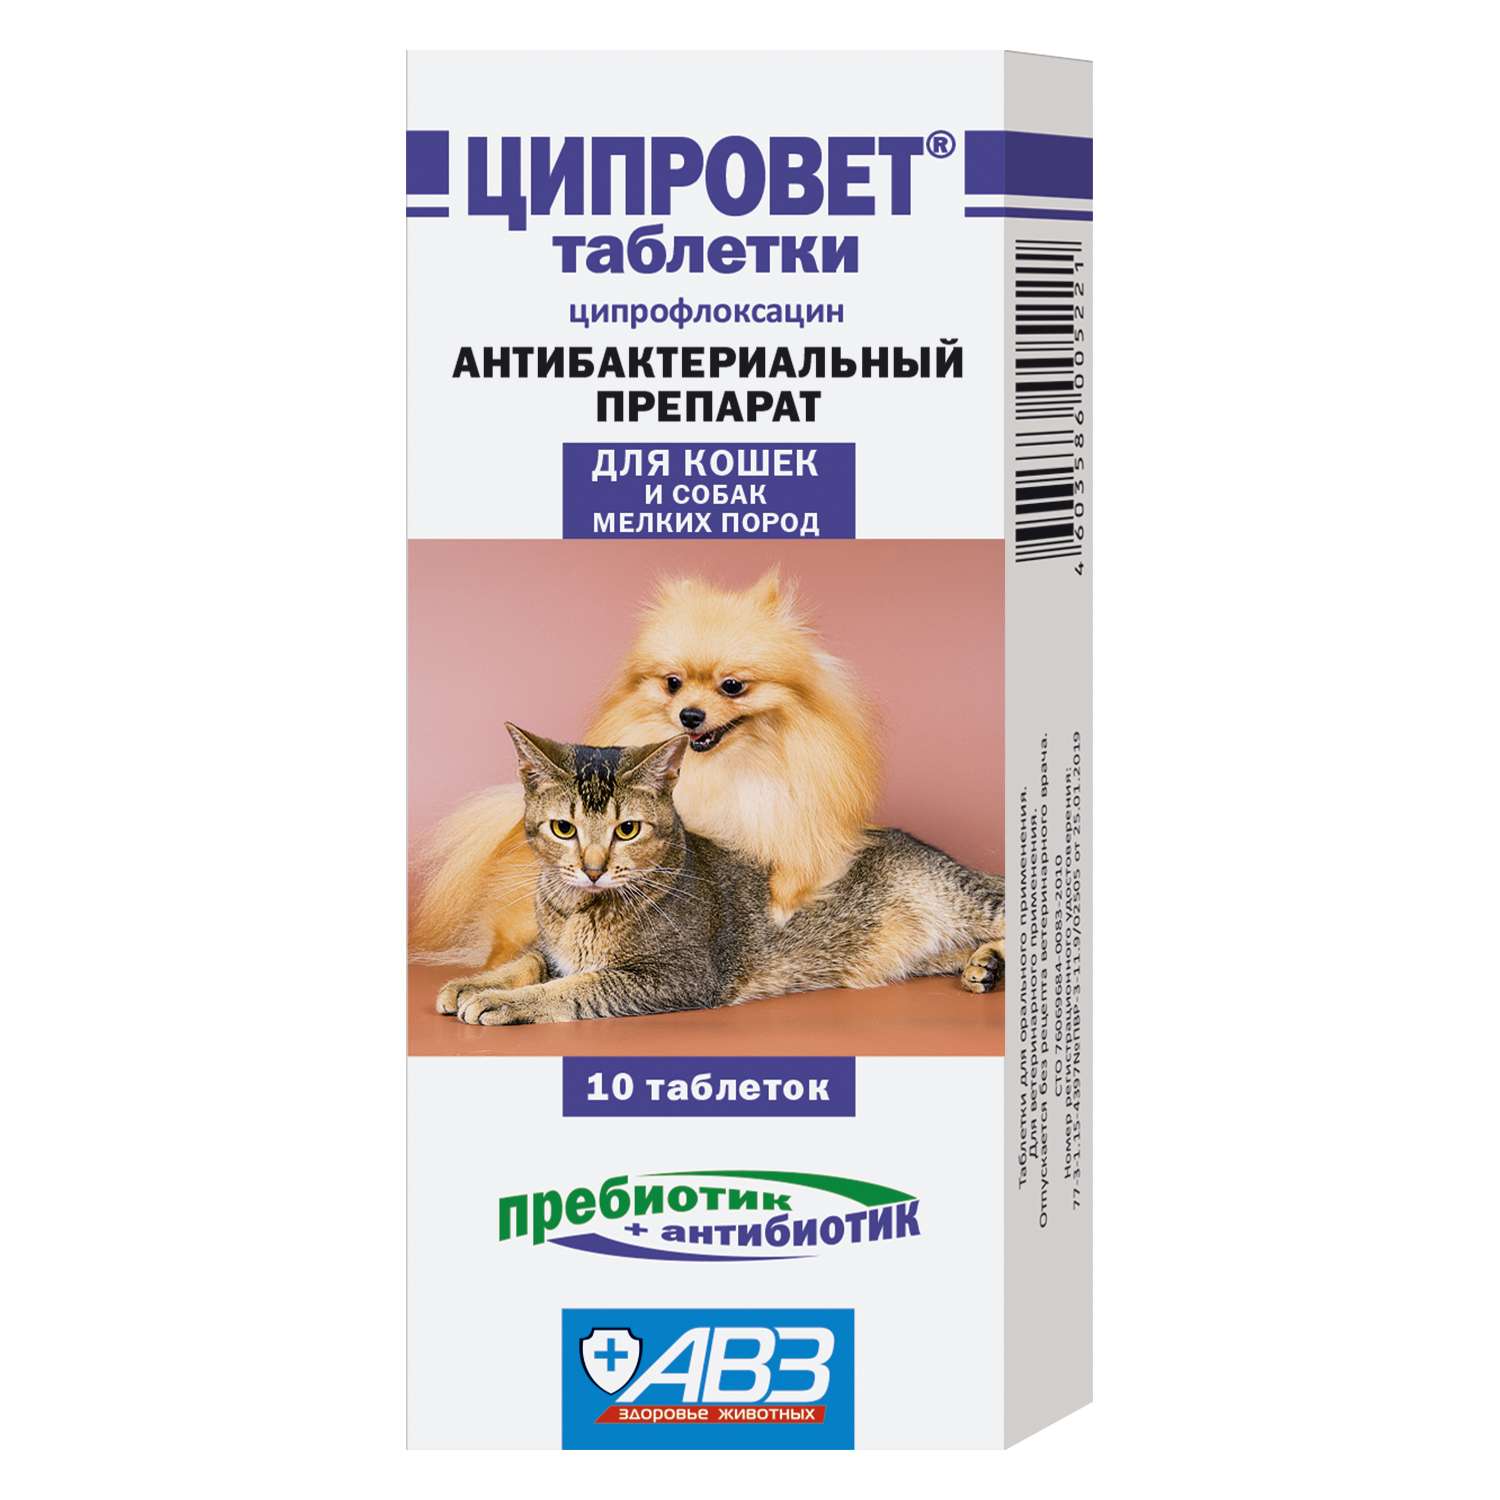 Препарат антибактериальный для собак и кошек АВЗ мелких пород Ципровет 10таблеток - фото 1